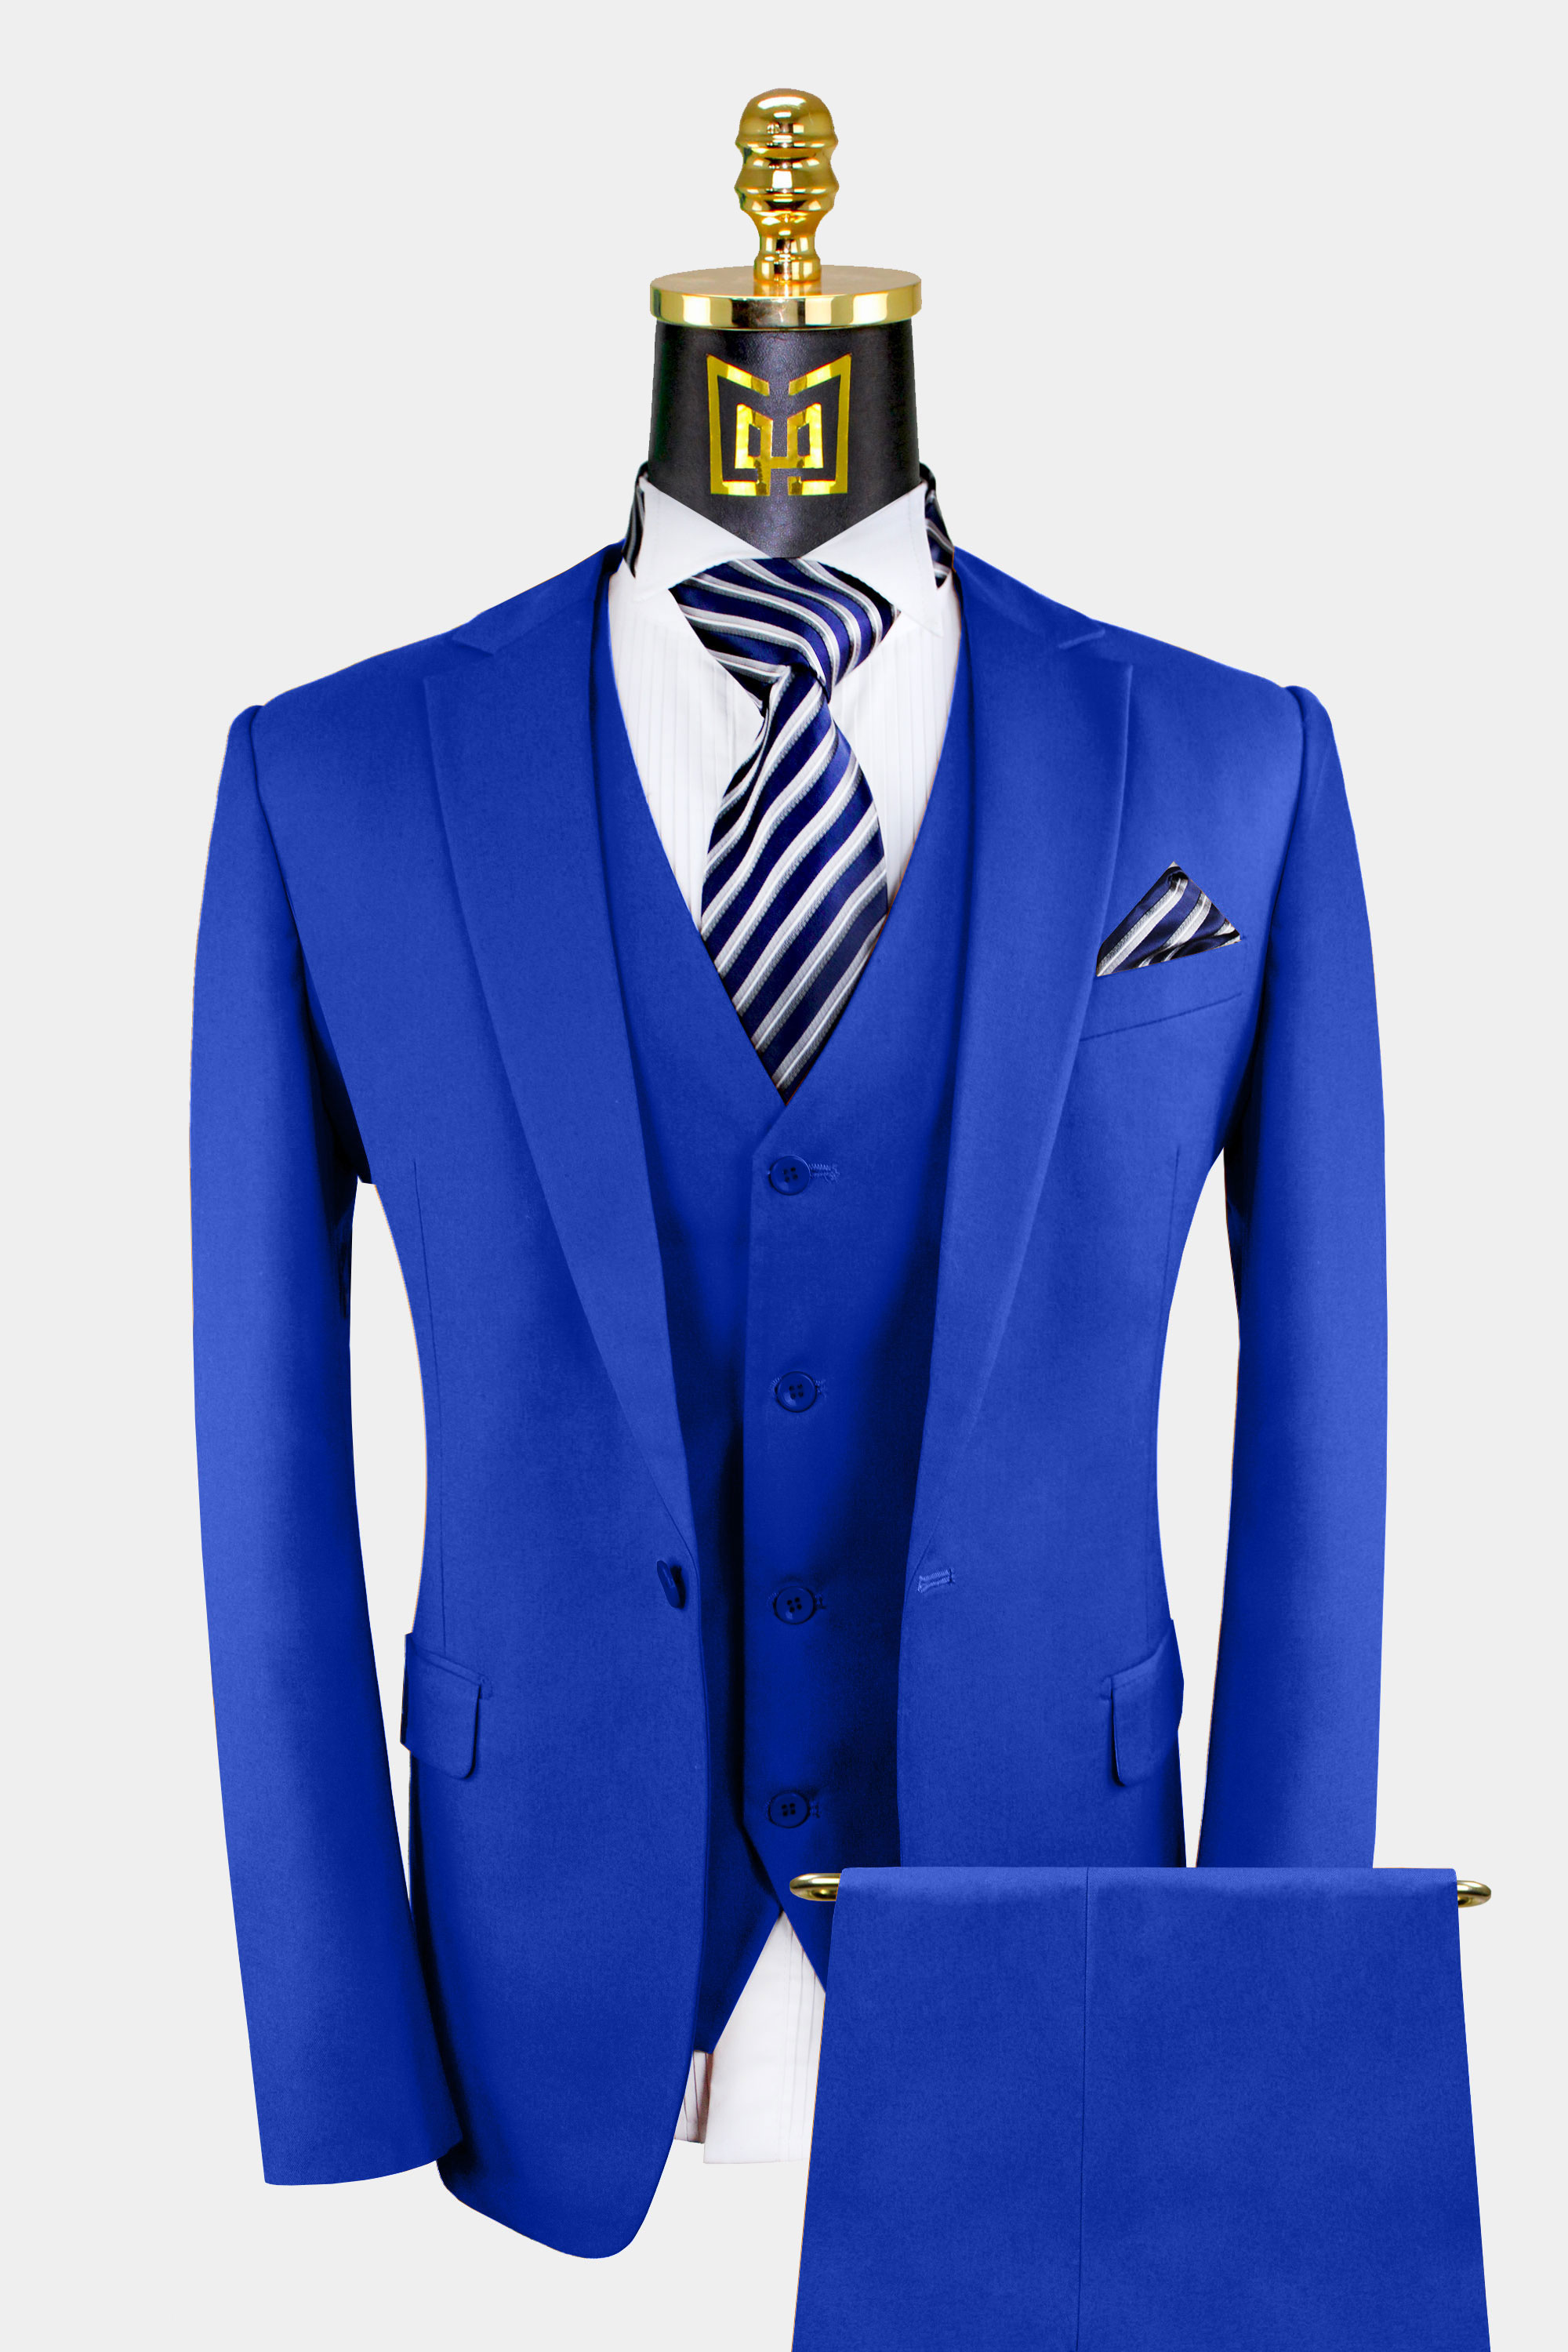 3 Piece Royal Blue Suit